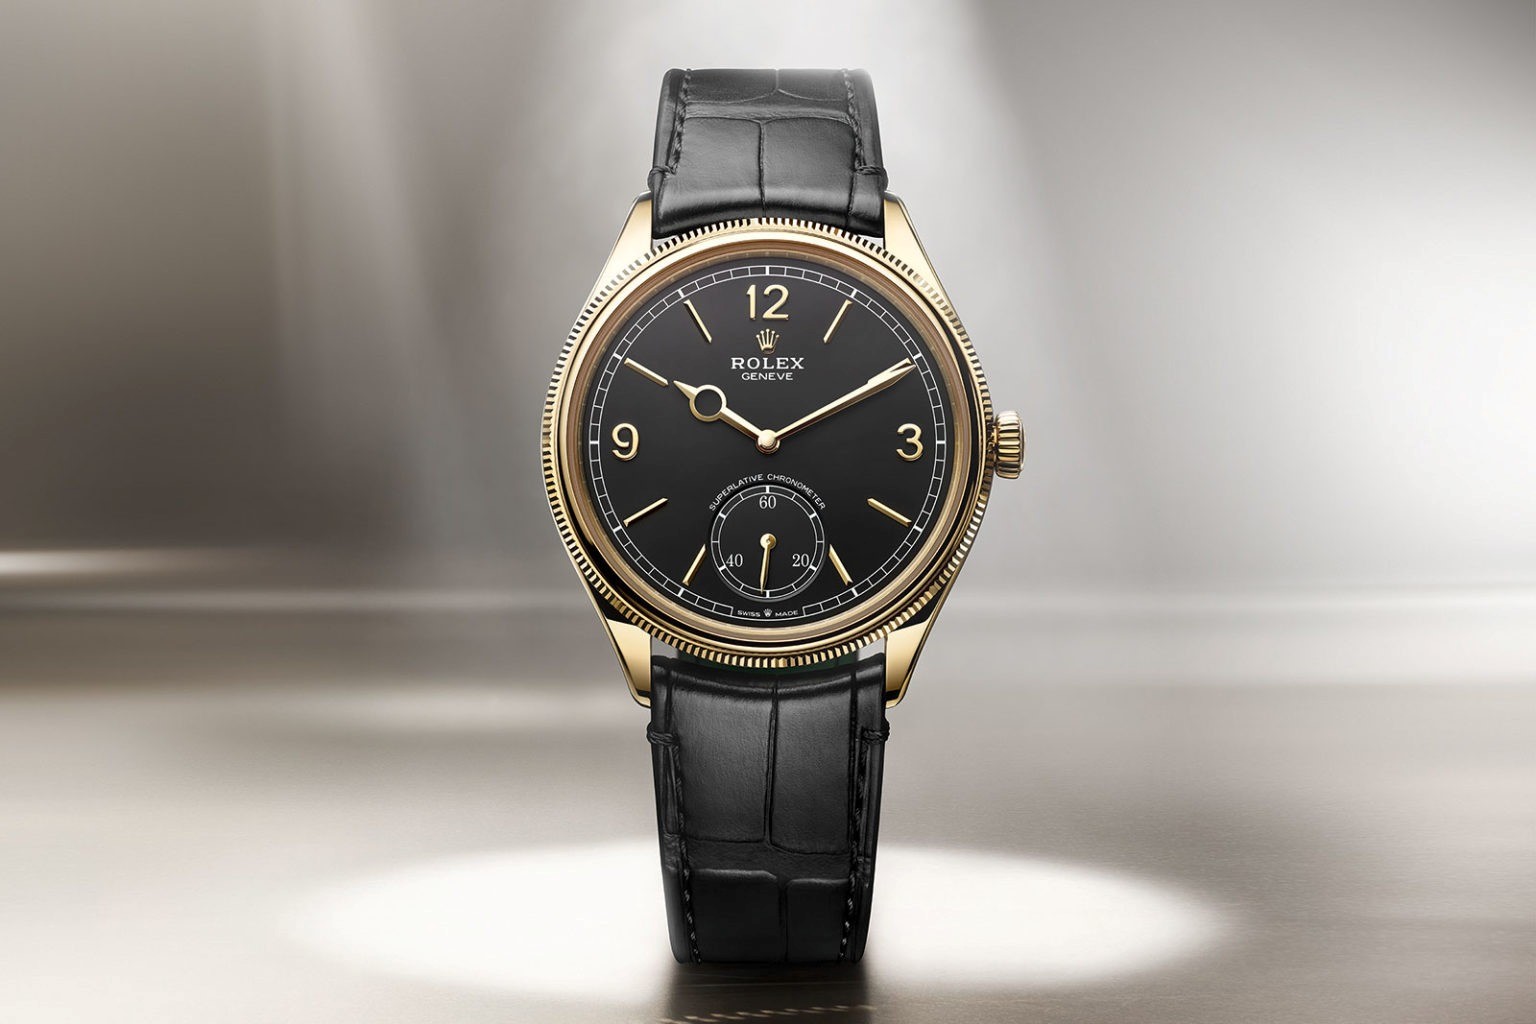 Chiếc đồng hồ Rolex Perpetual 1908 mới ra mắt có gì đặc biệt?